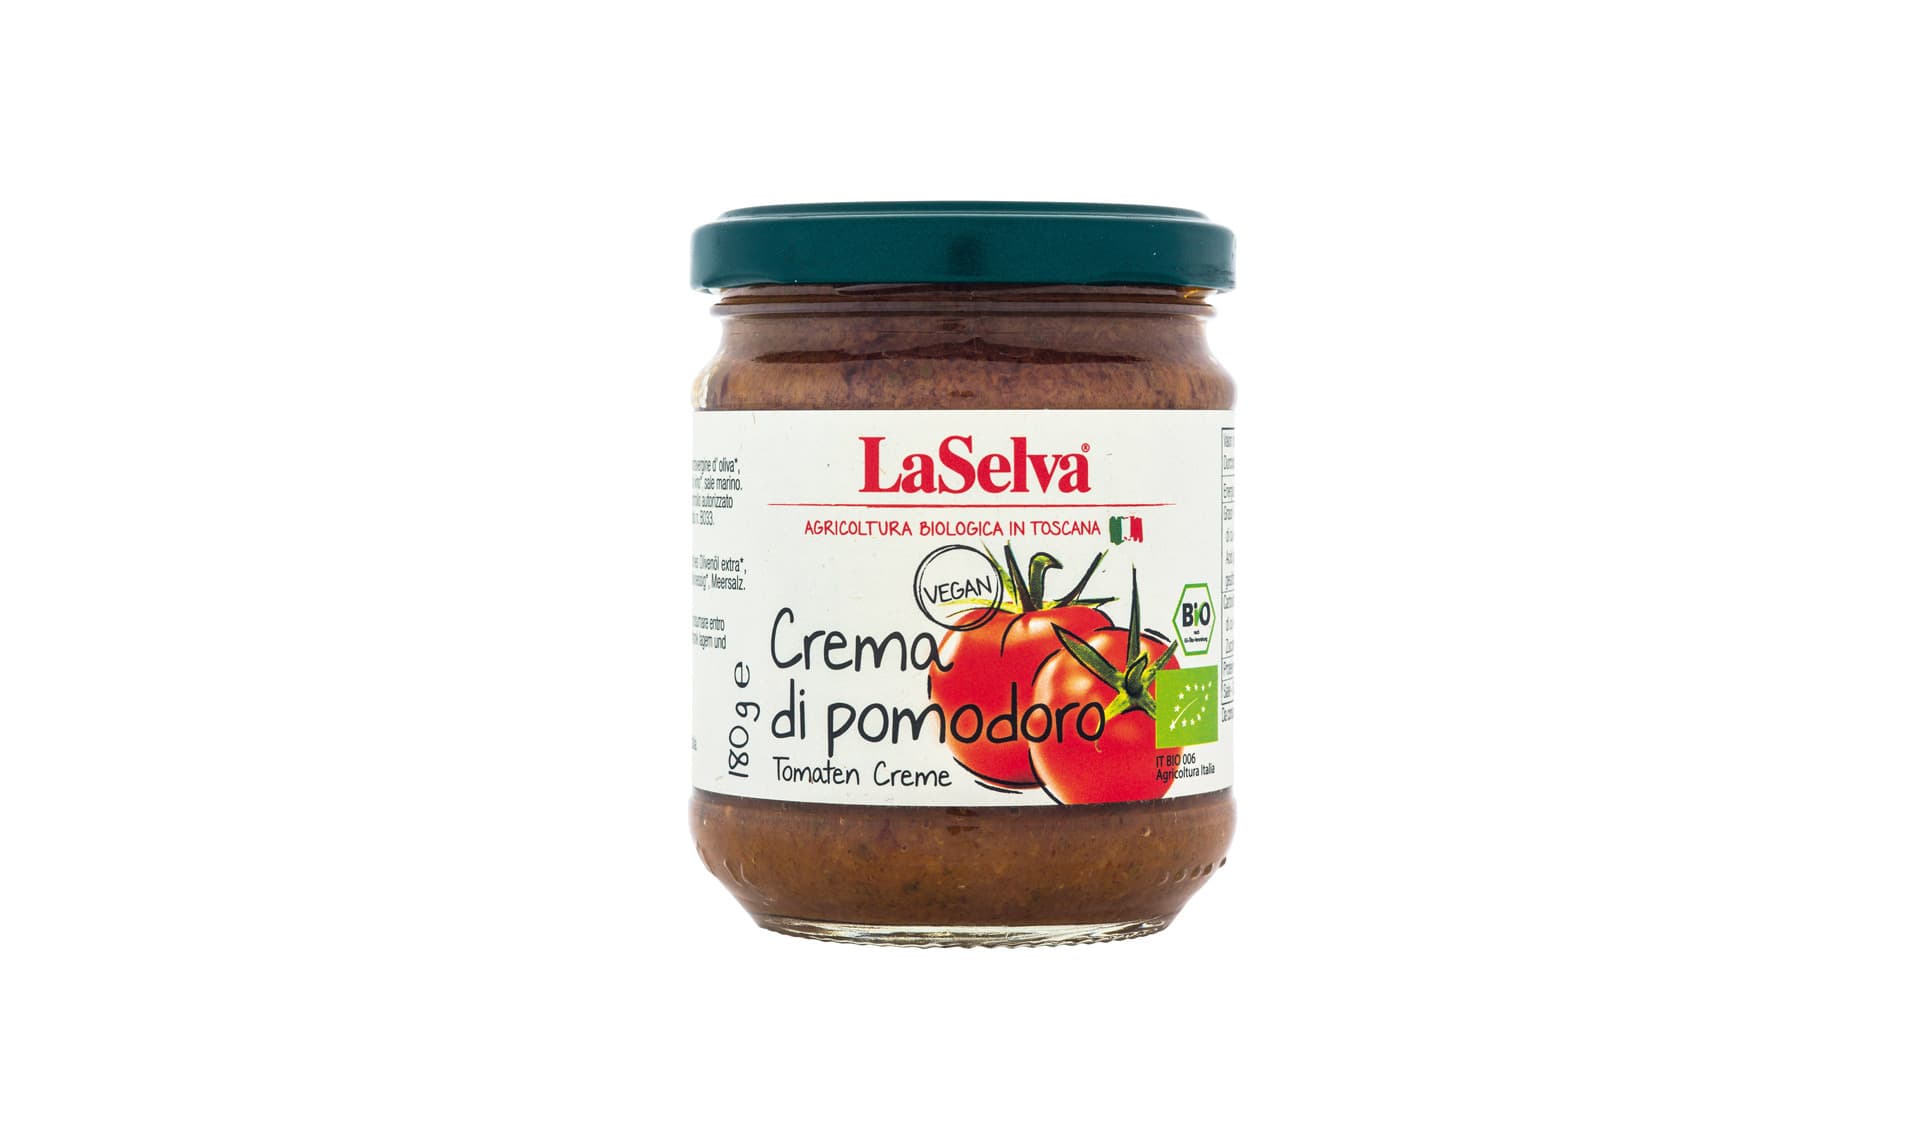 LaSelva: Tomaten Creme – Crema di pomodoro